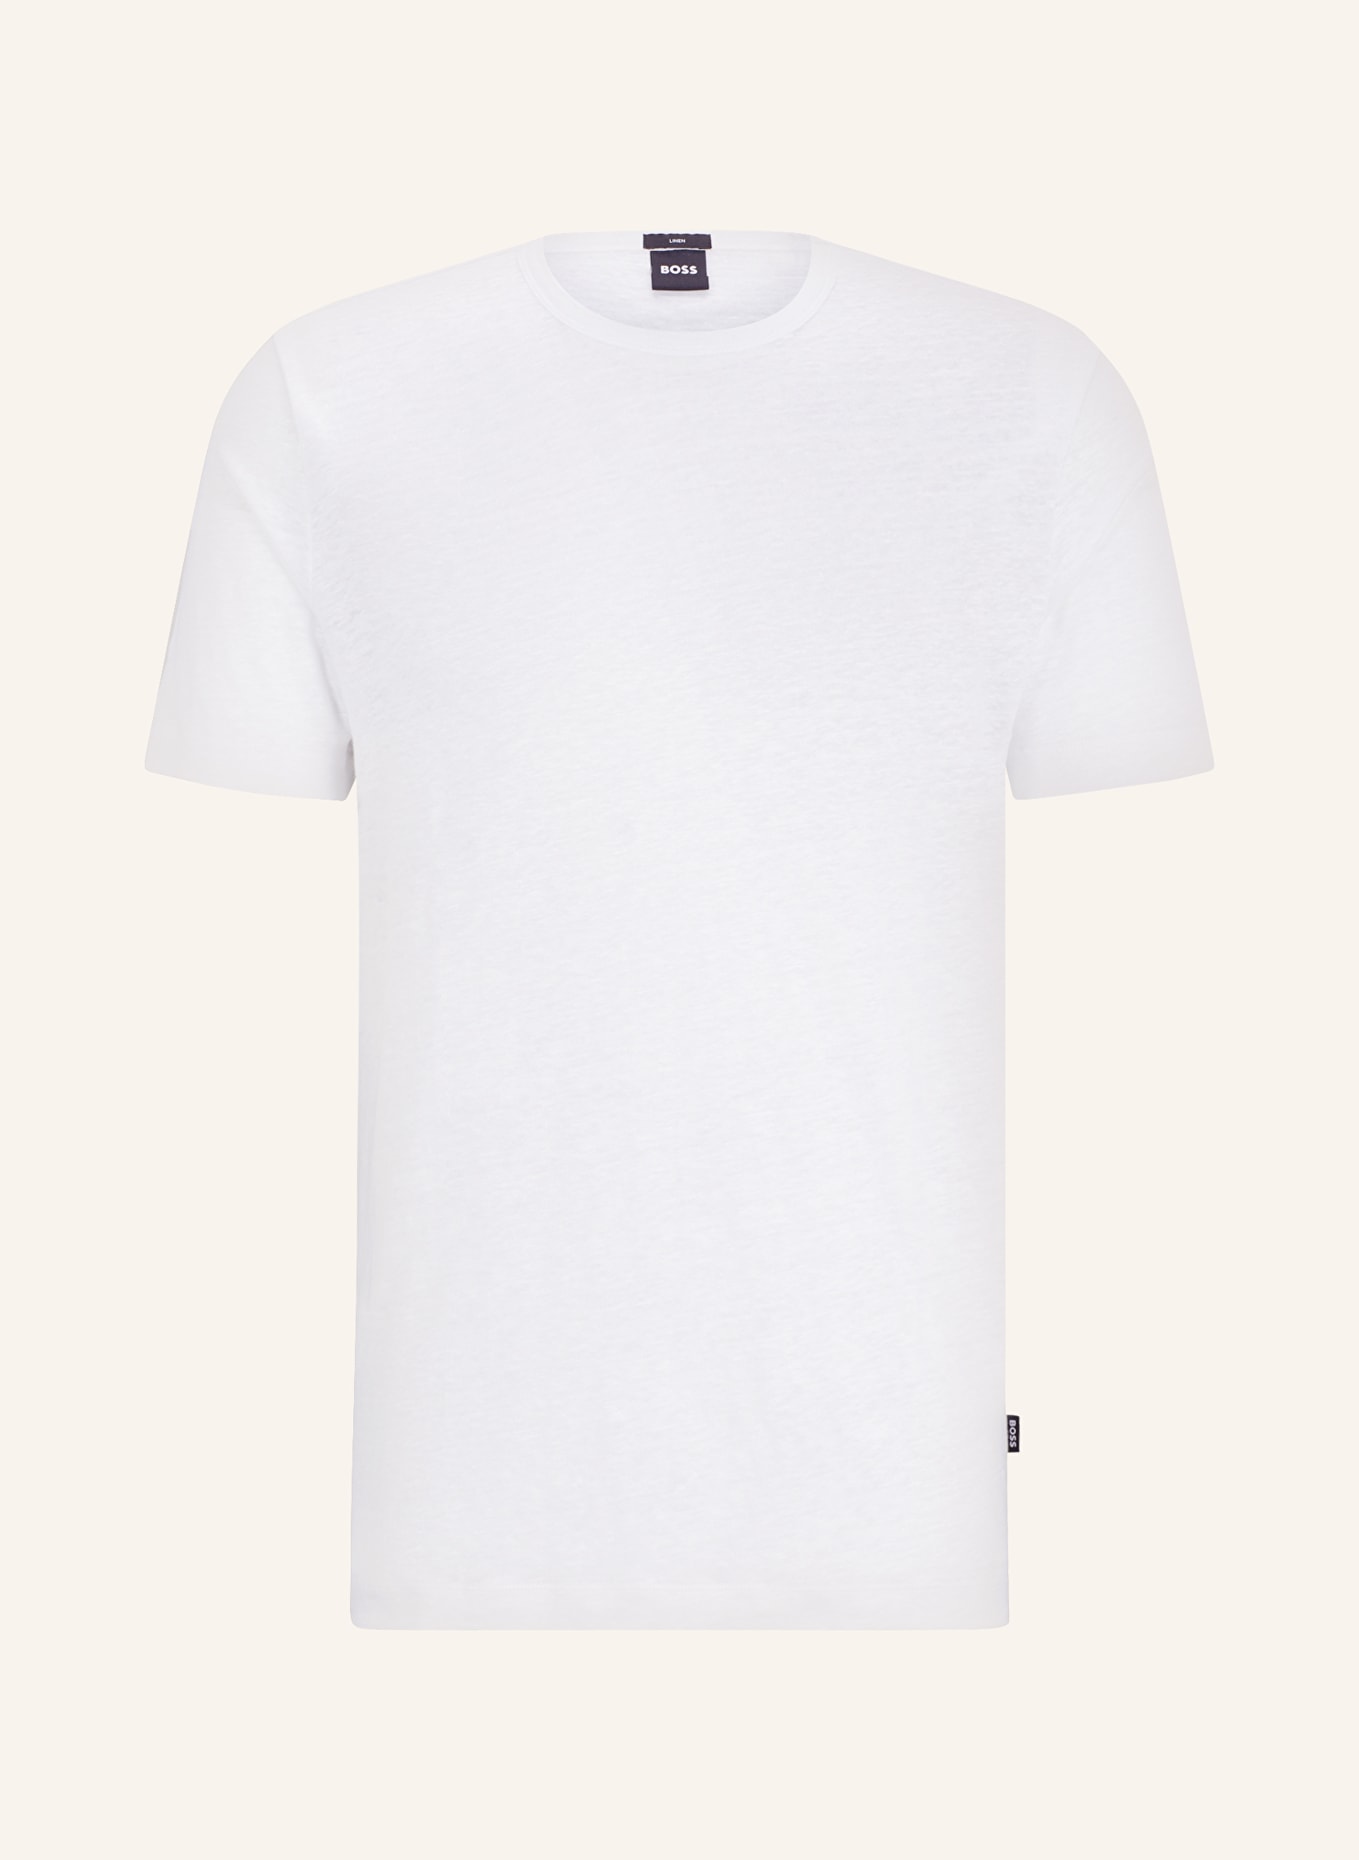 BOSS T-shirt TIBURT made of linen, Color: WHITE (Image 1)